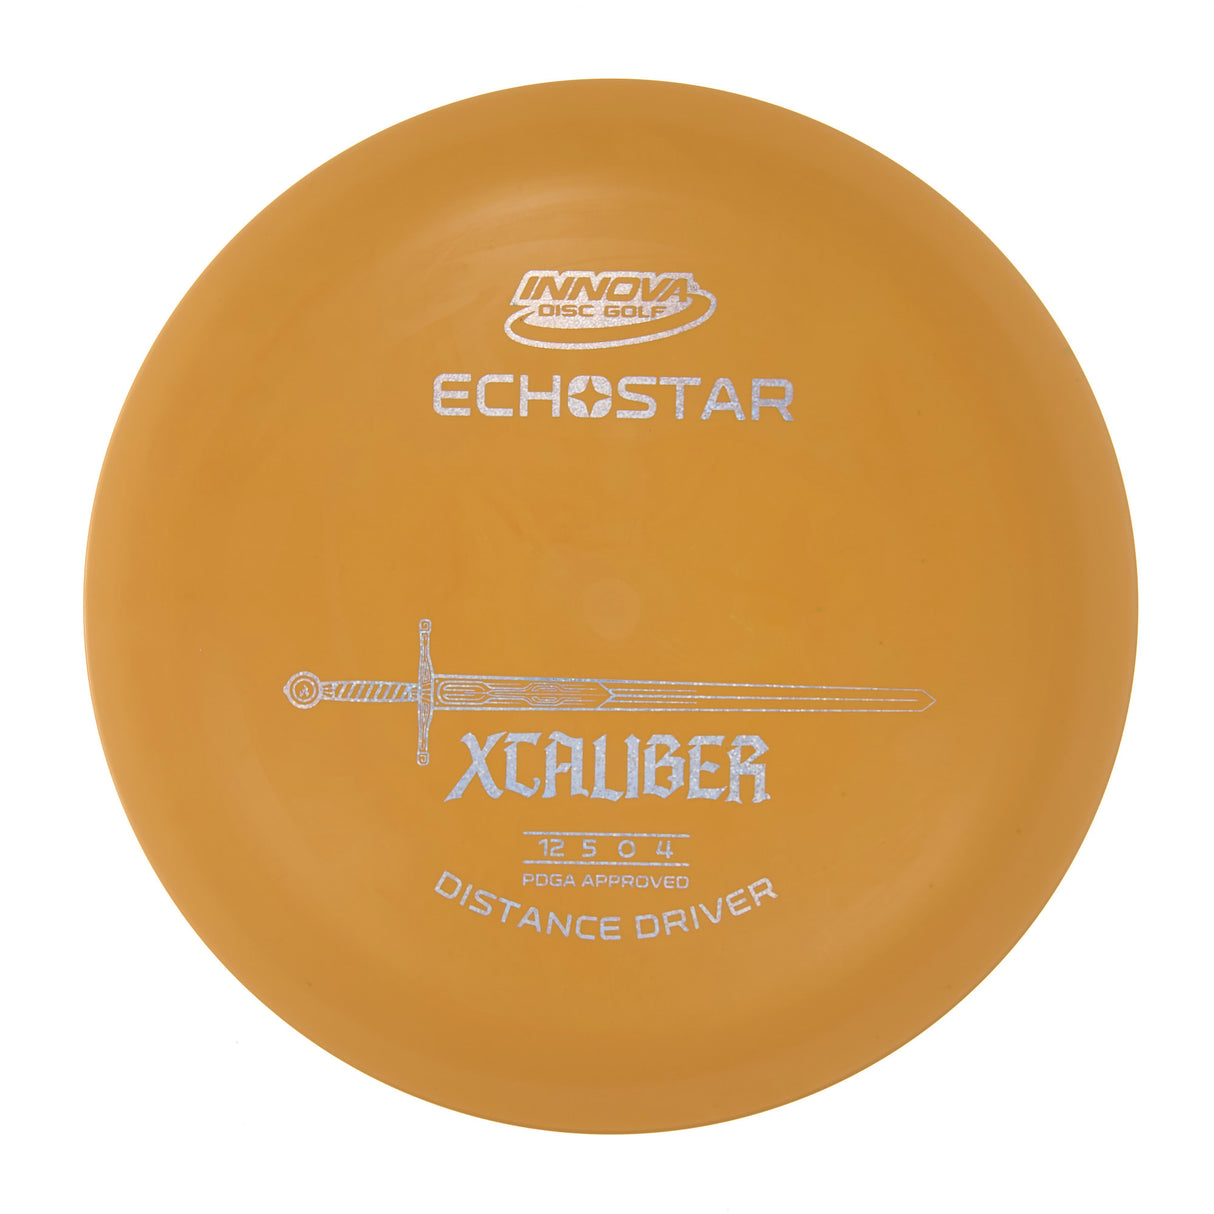 Innova XCaliber - Echo Star  177g | Style 0003